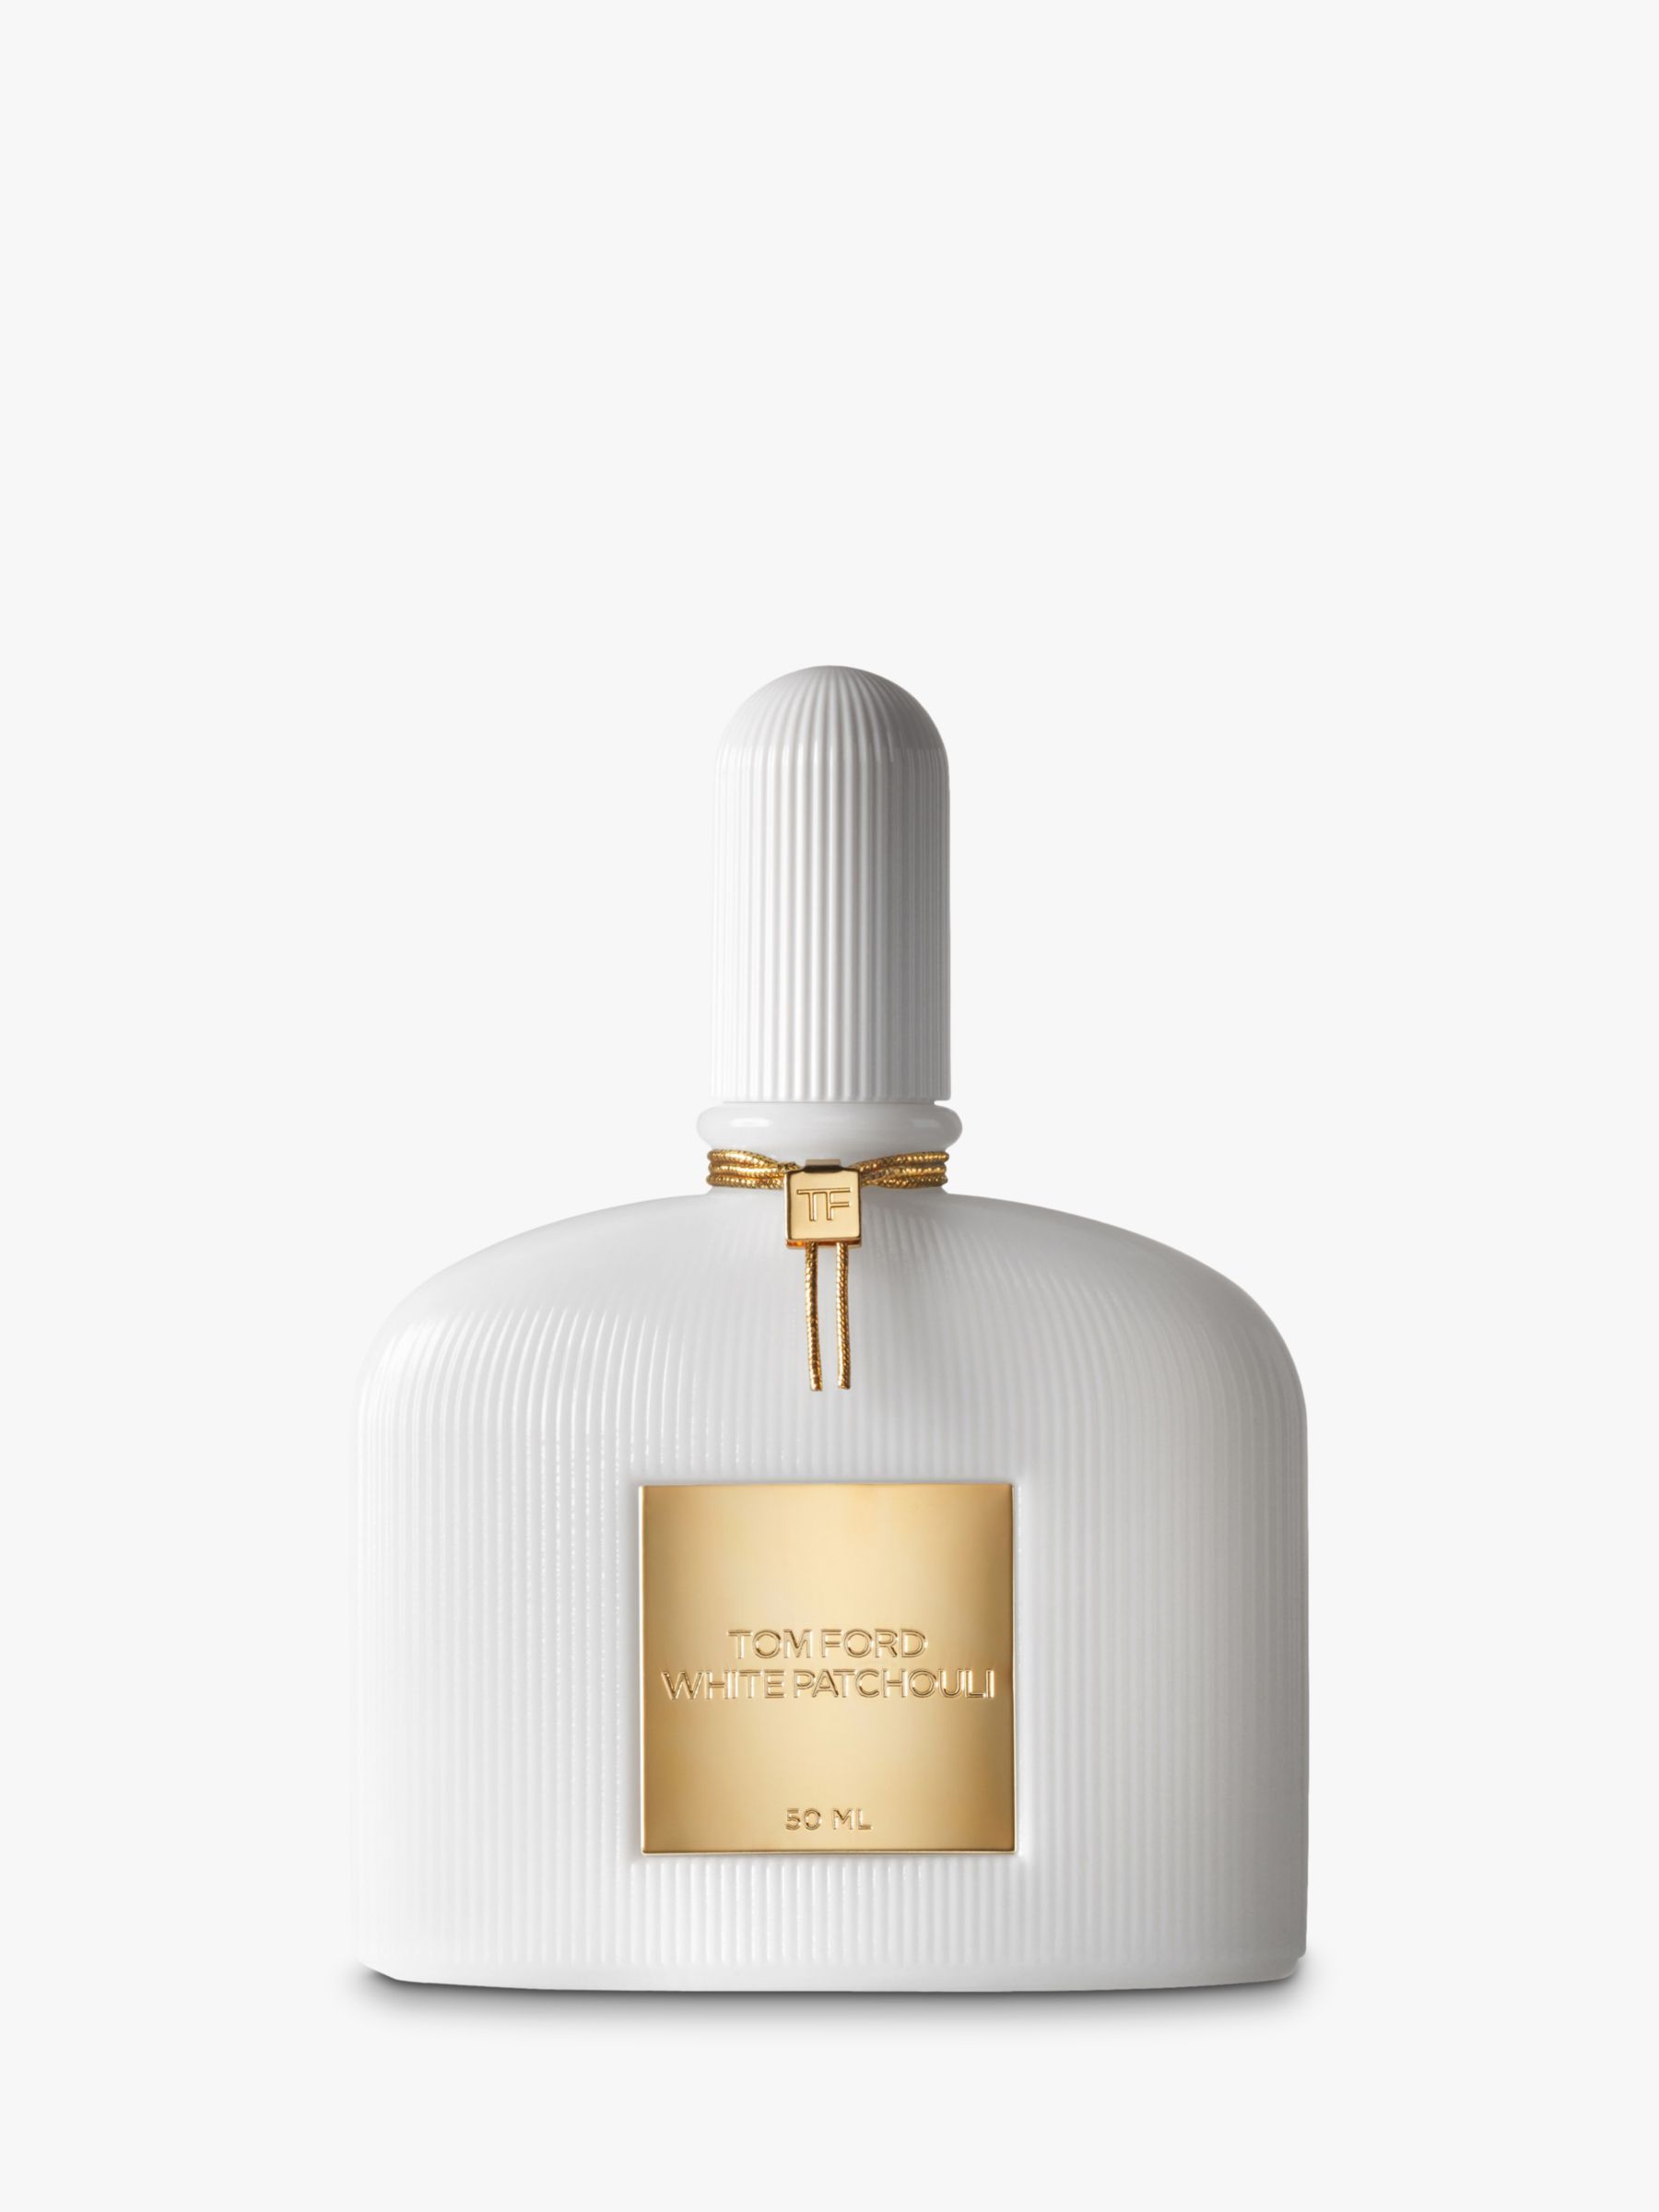 TOM FORD White Patchouli Eau de Parfum, 100ml at John Lewis & Partners